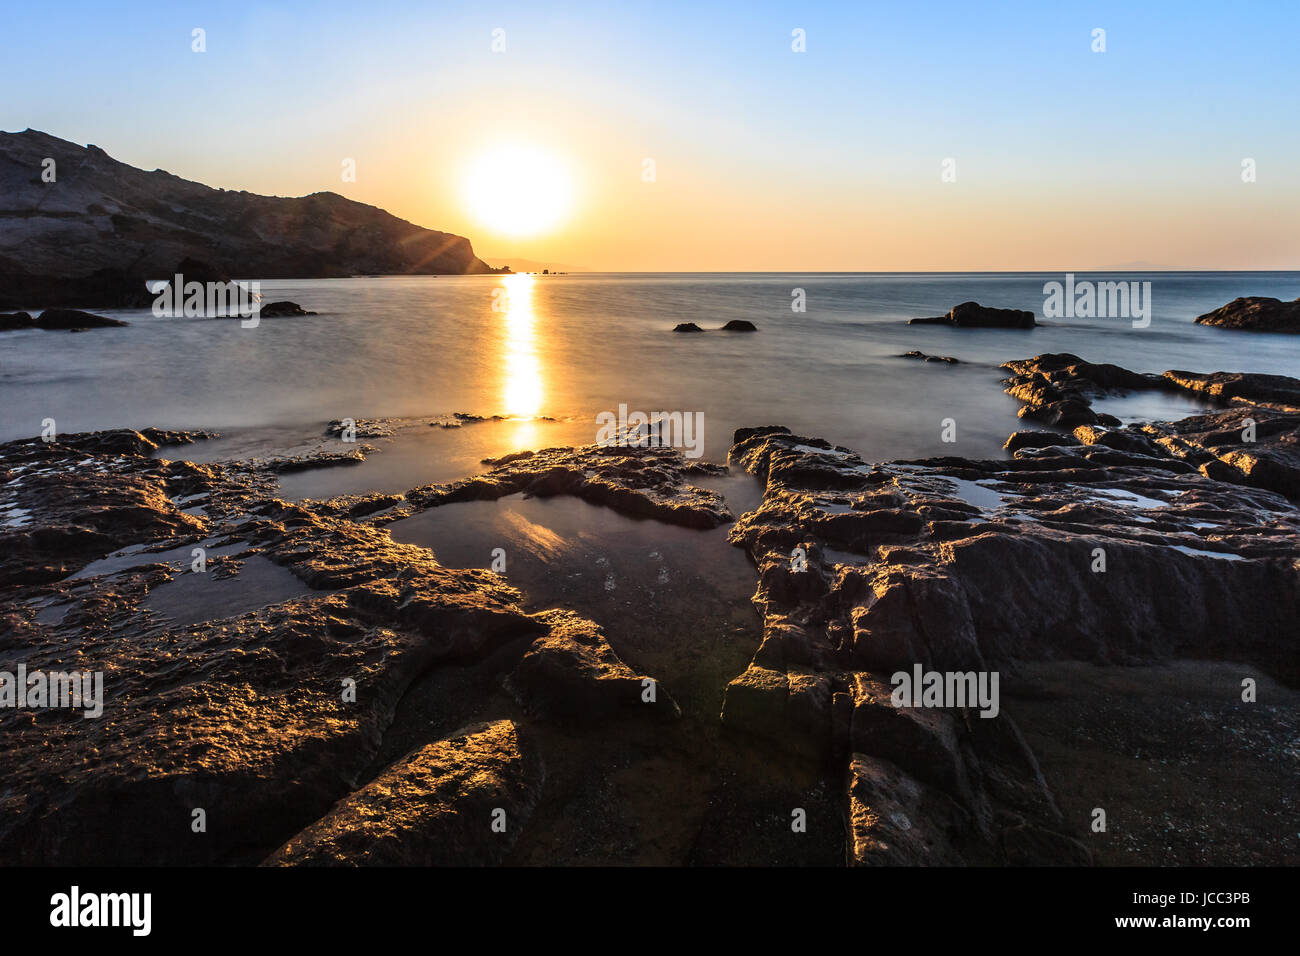 sunrise on the beach near Kefalos town. Kos island (Greece) Stock Photo